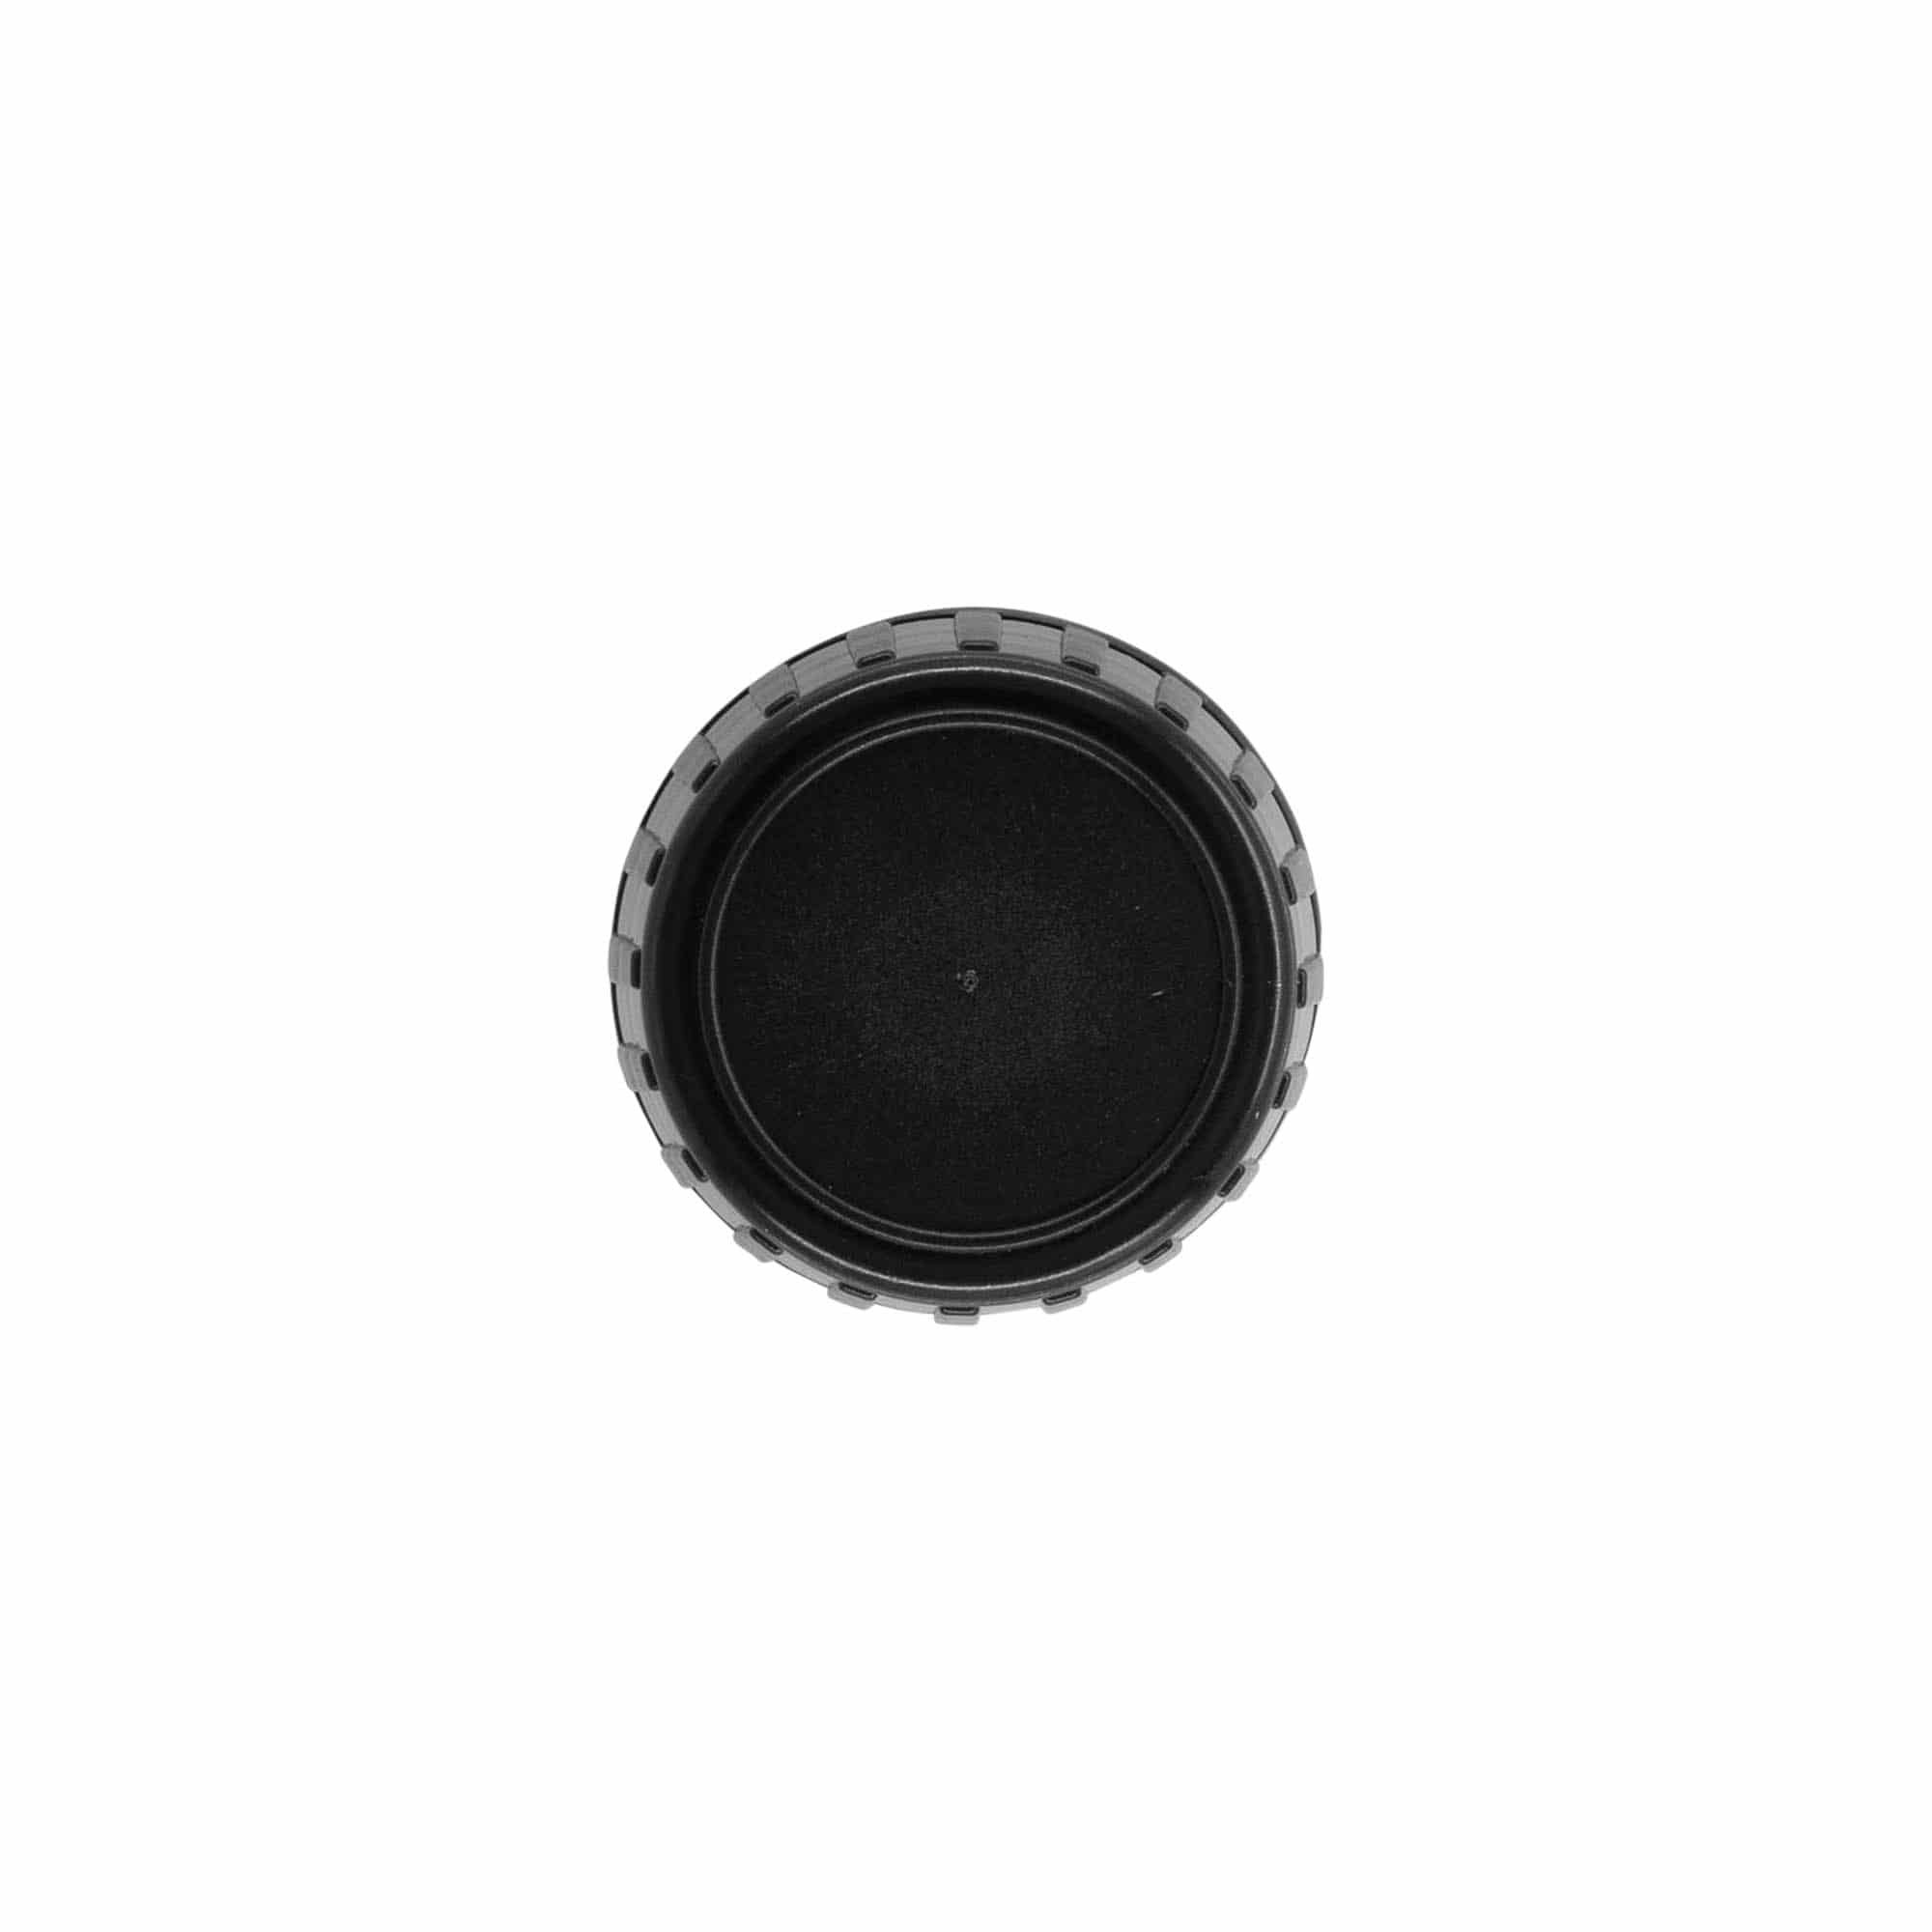 Šroubovací uzávěr s trhacím kroužkem, plast PP, černý, pro ústí: DIN 28